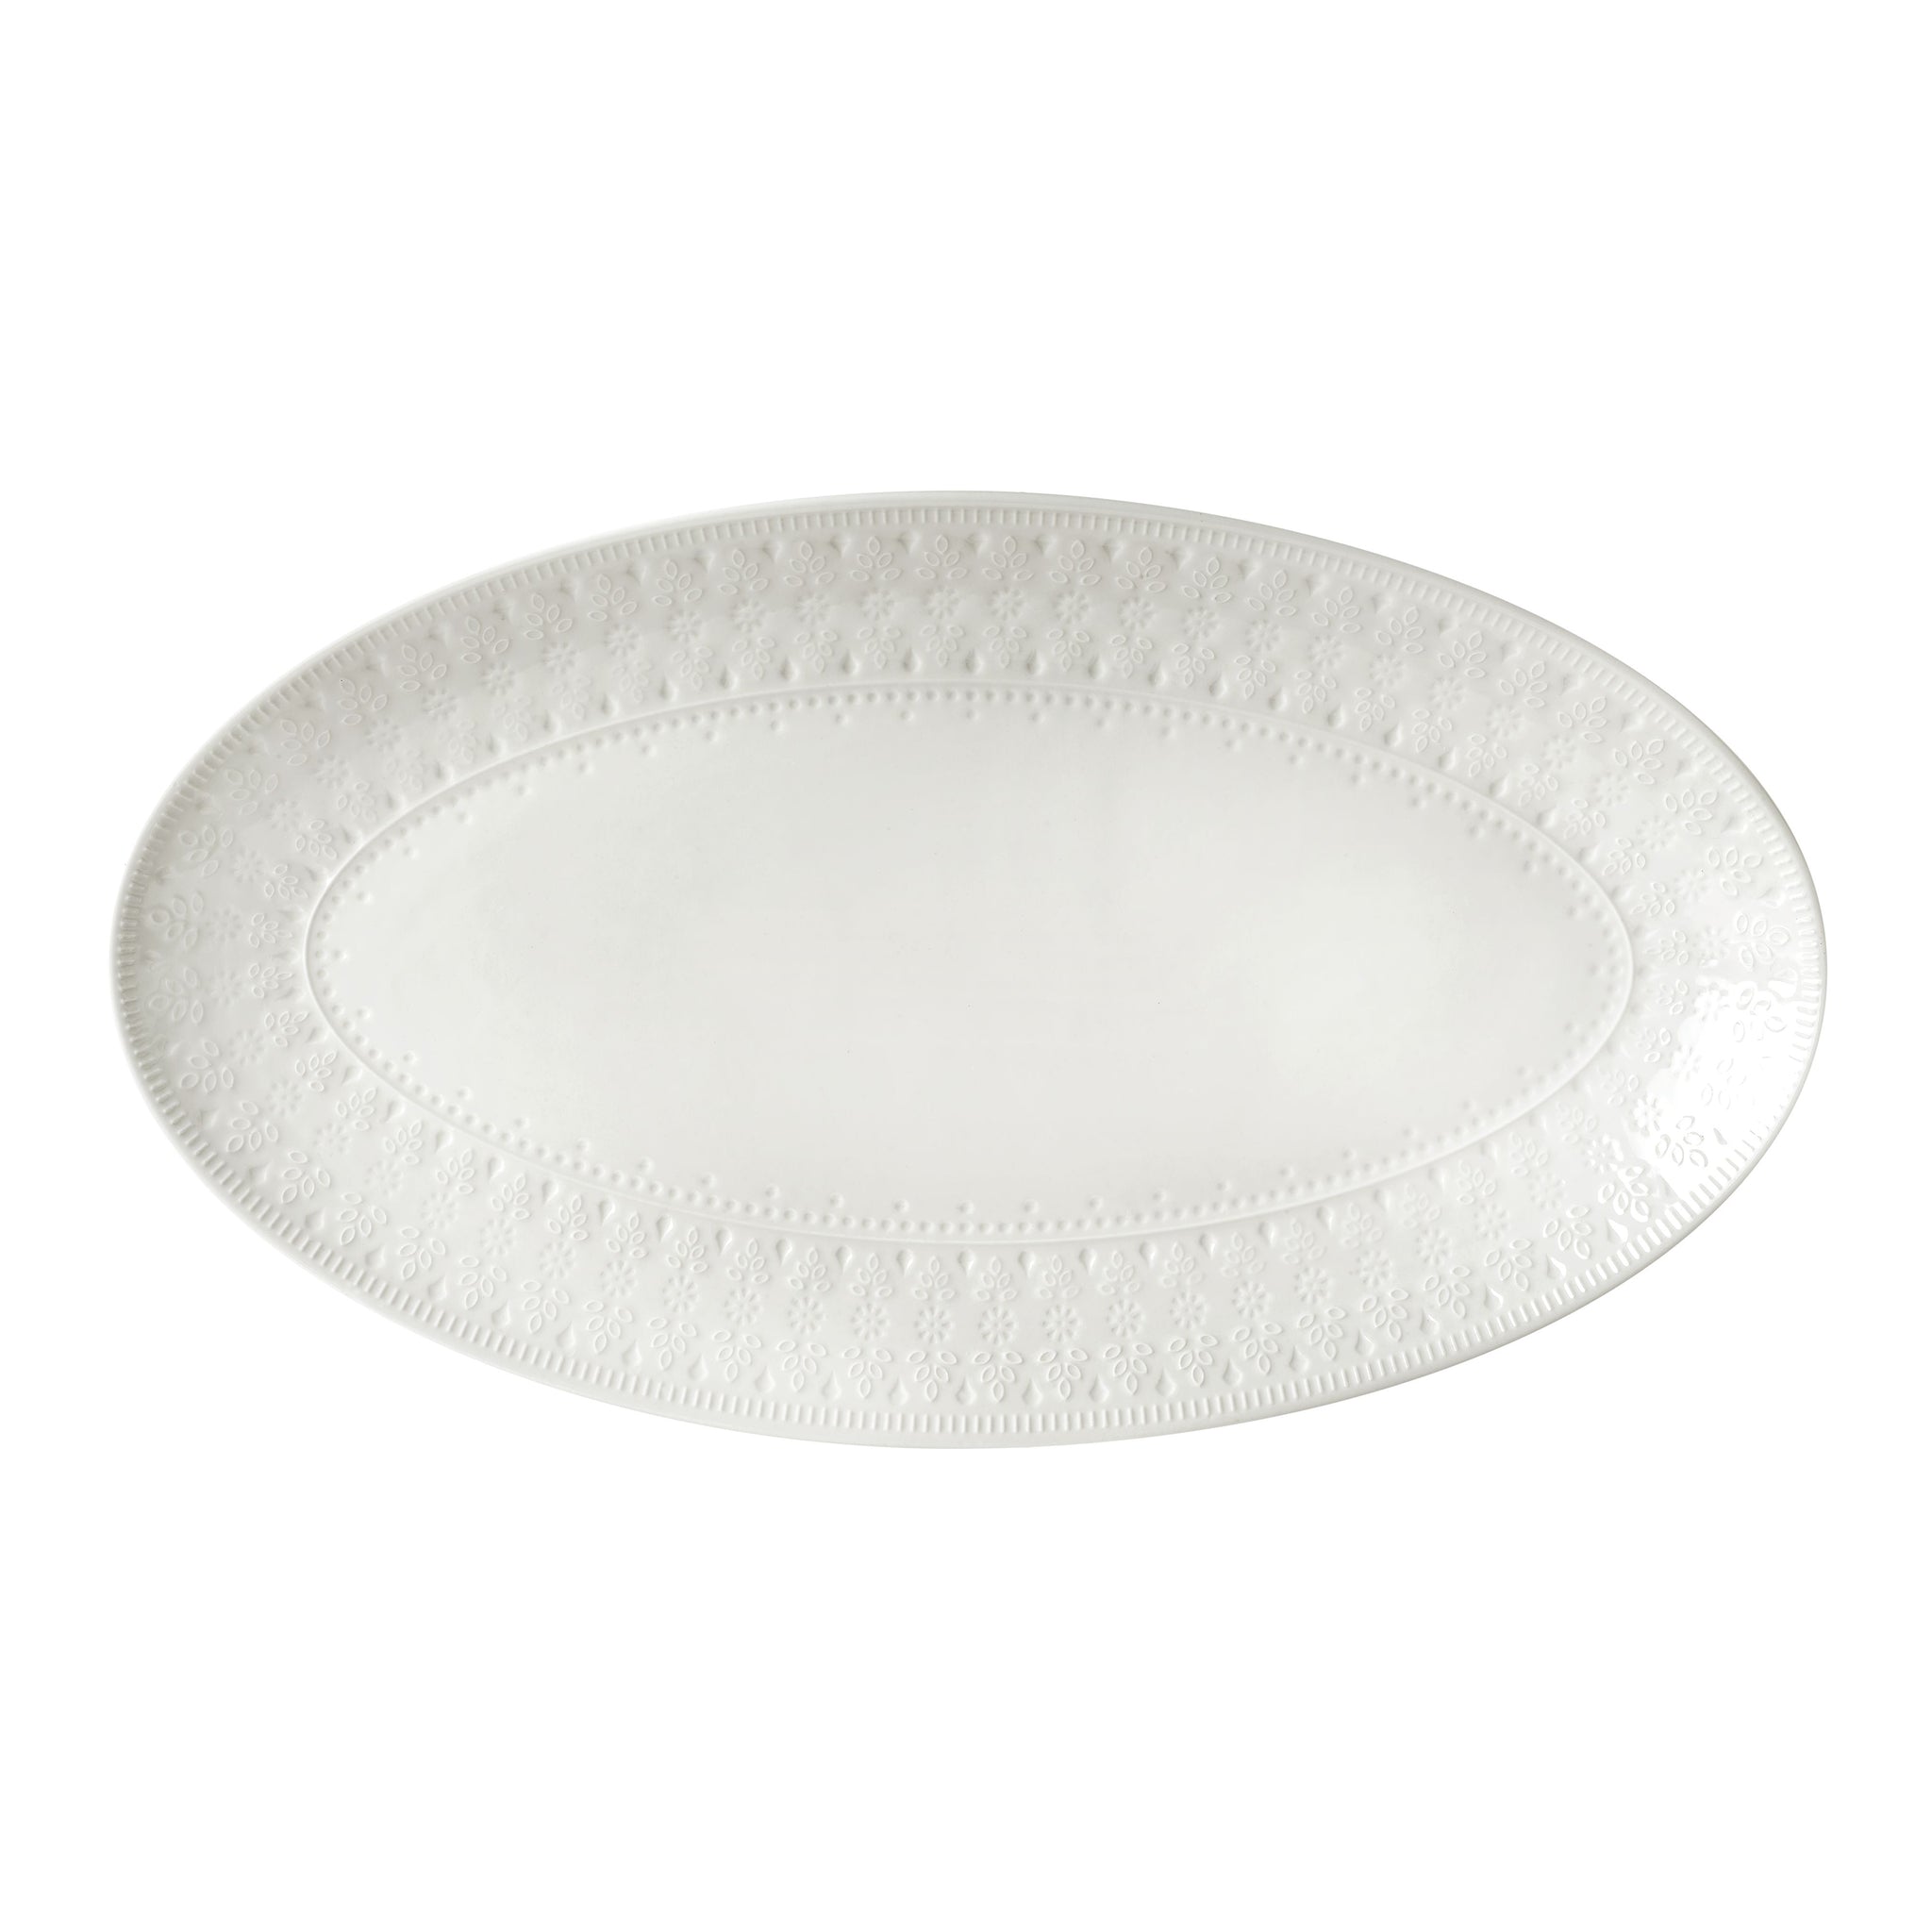 Fez Oval Platter - White